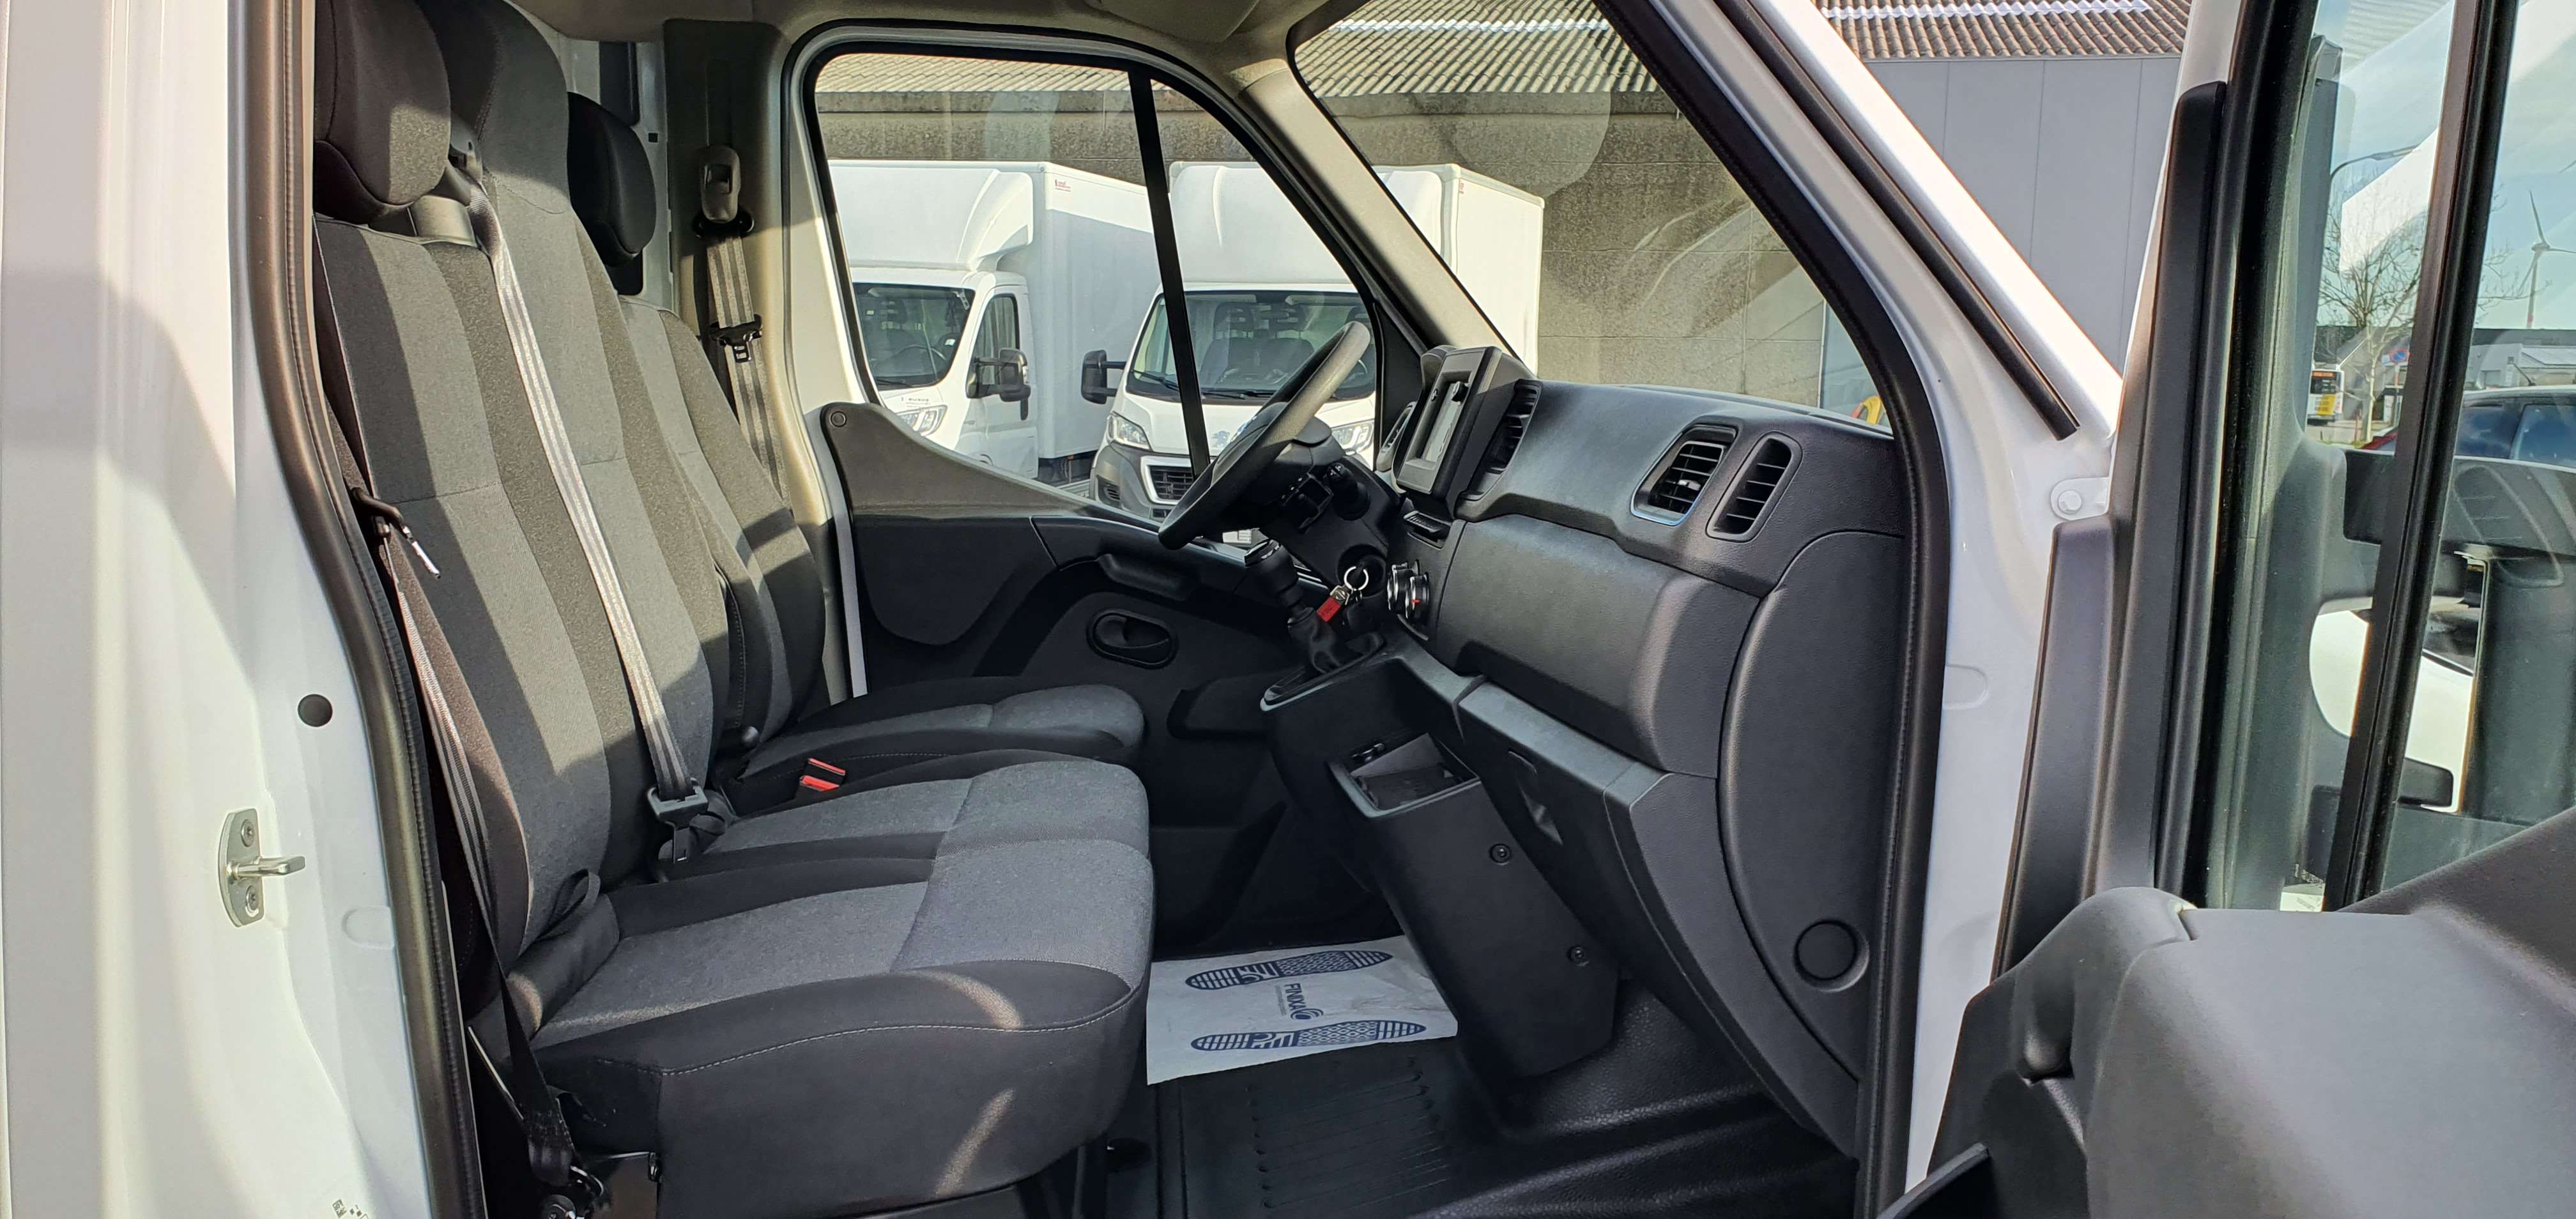 P-Benz - Nissan Onbekend NV400 meubelbak draaideuren 5231km 06/2022 airco